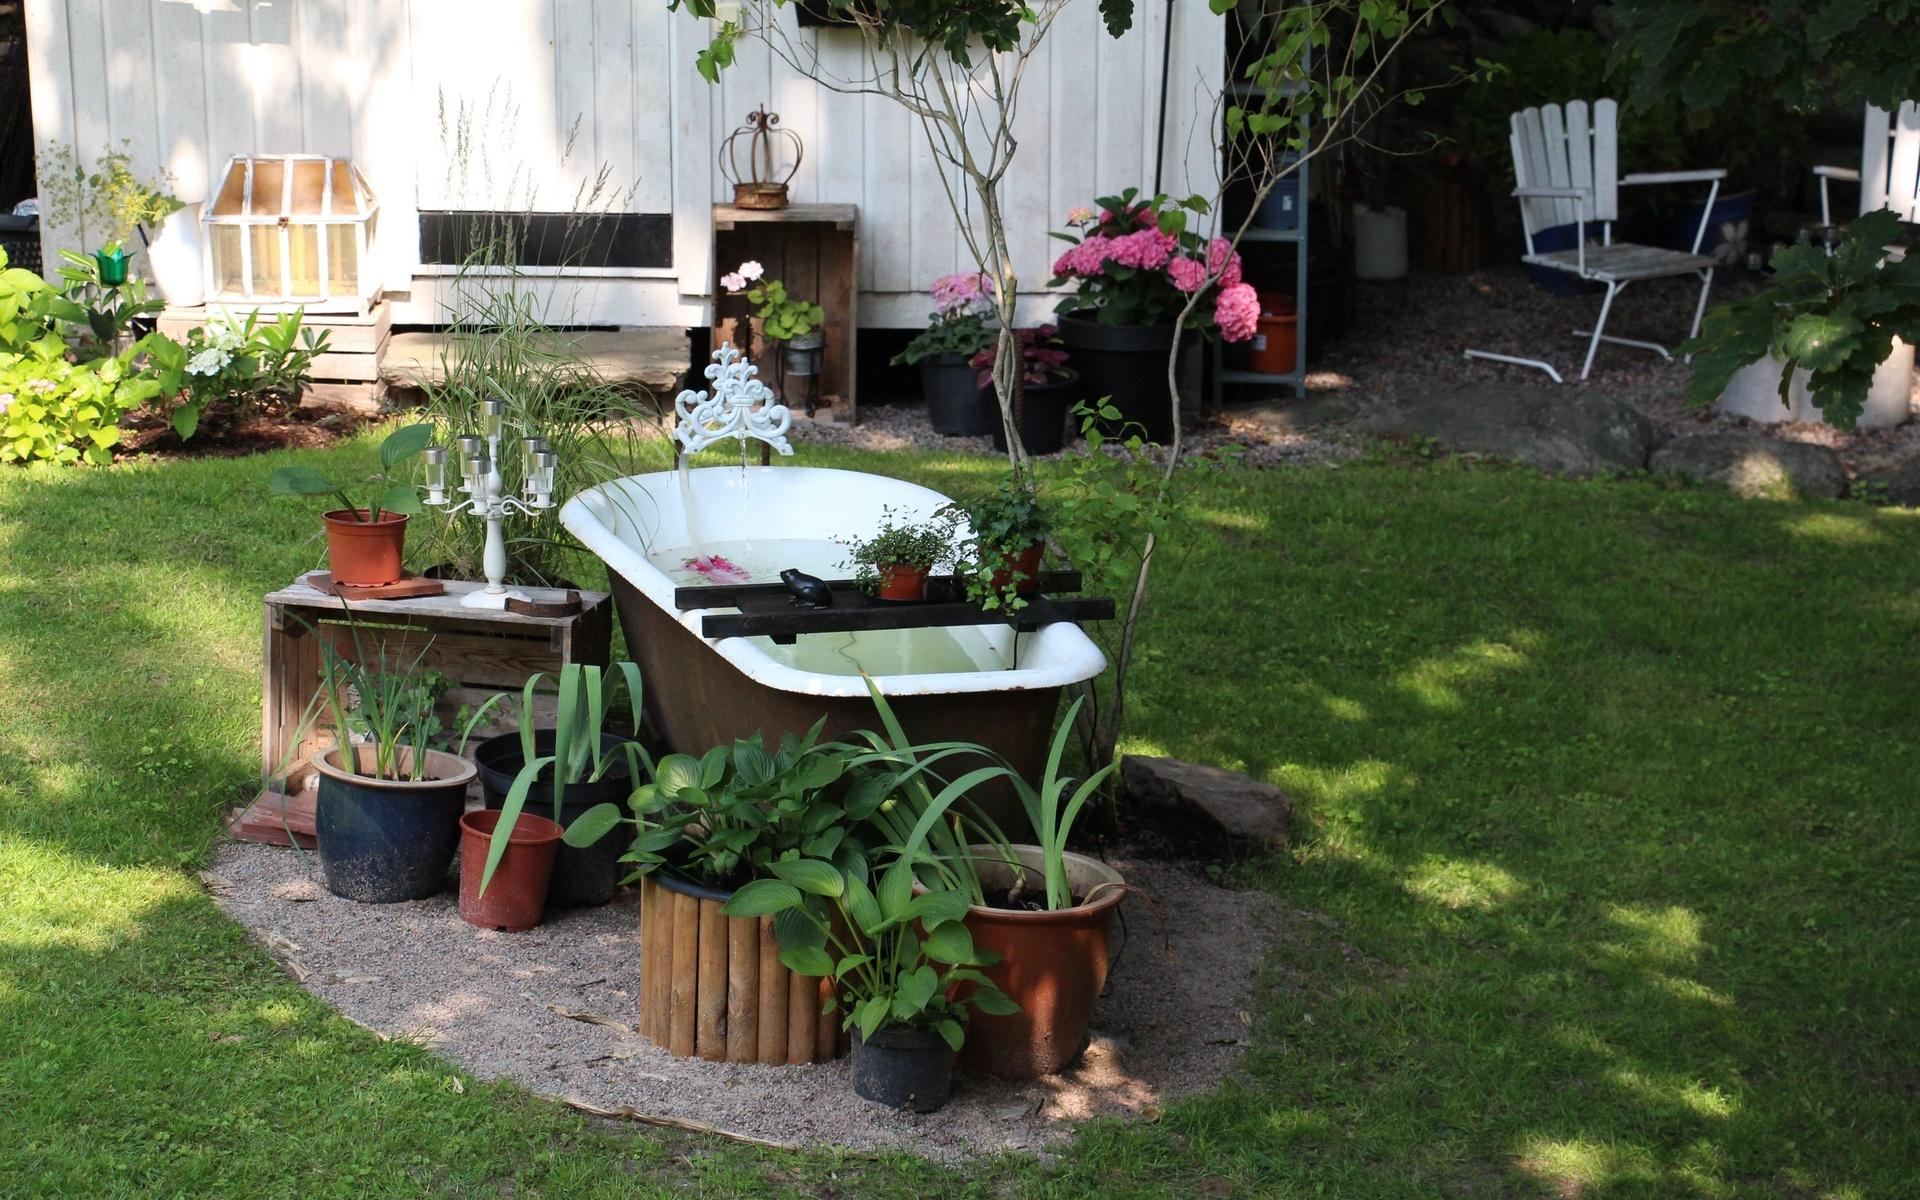 Ett gammalt badkar har fått ta plats i familjen Carlssons trädgård.